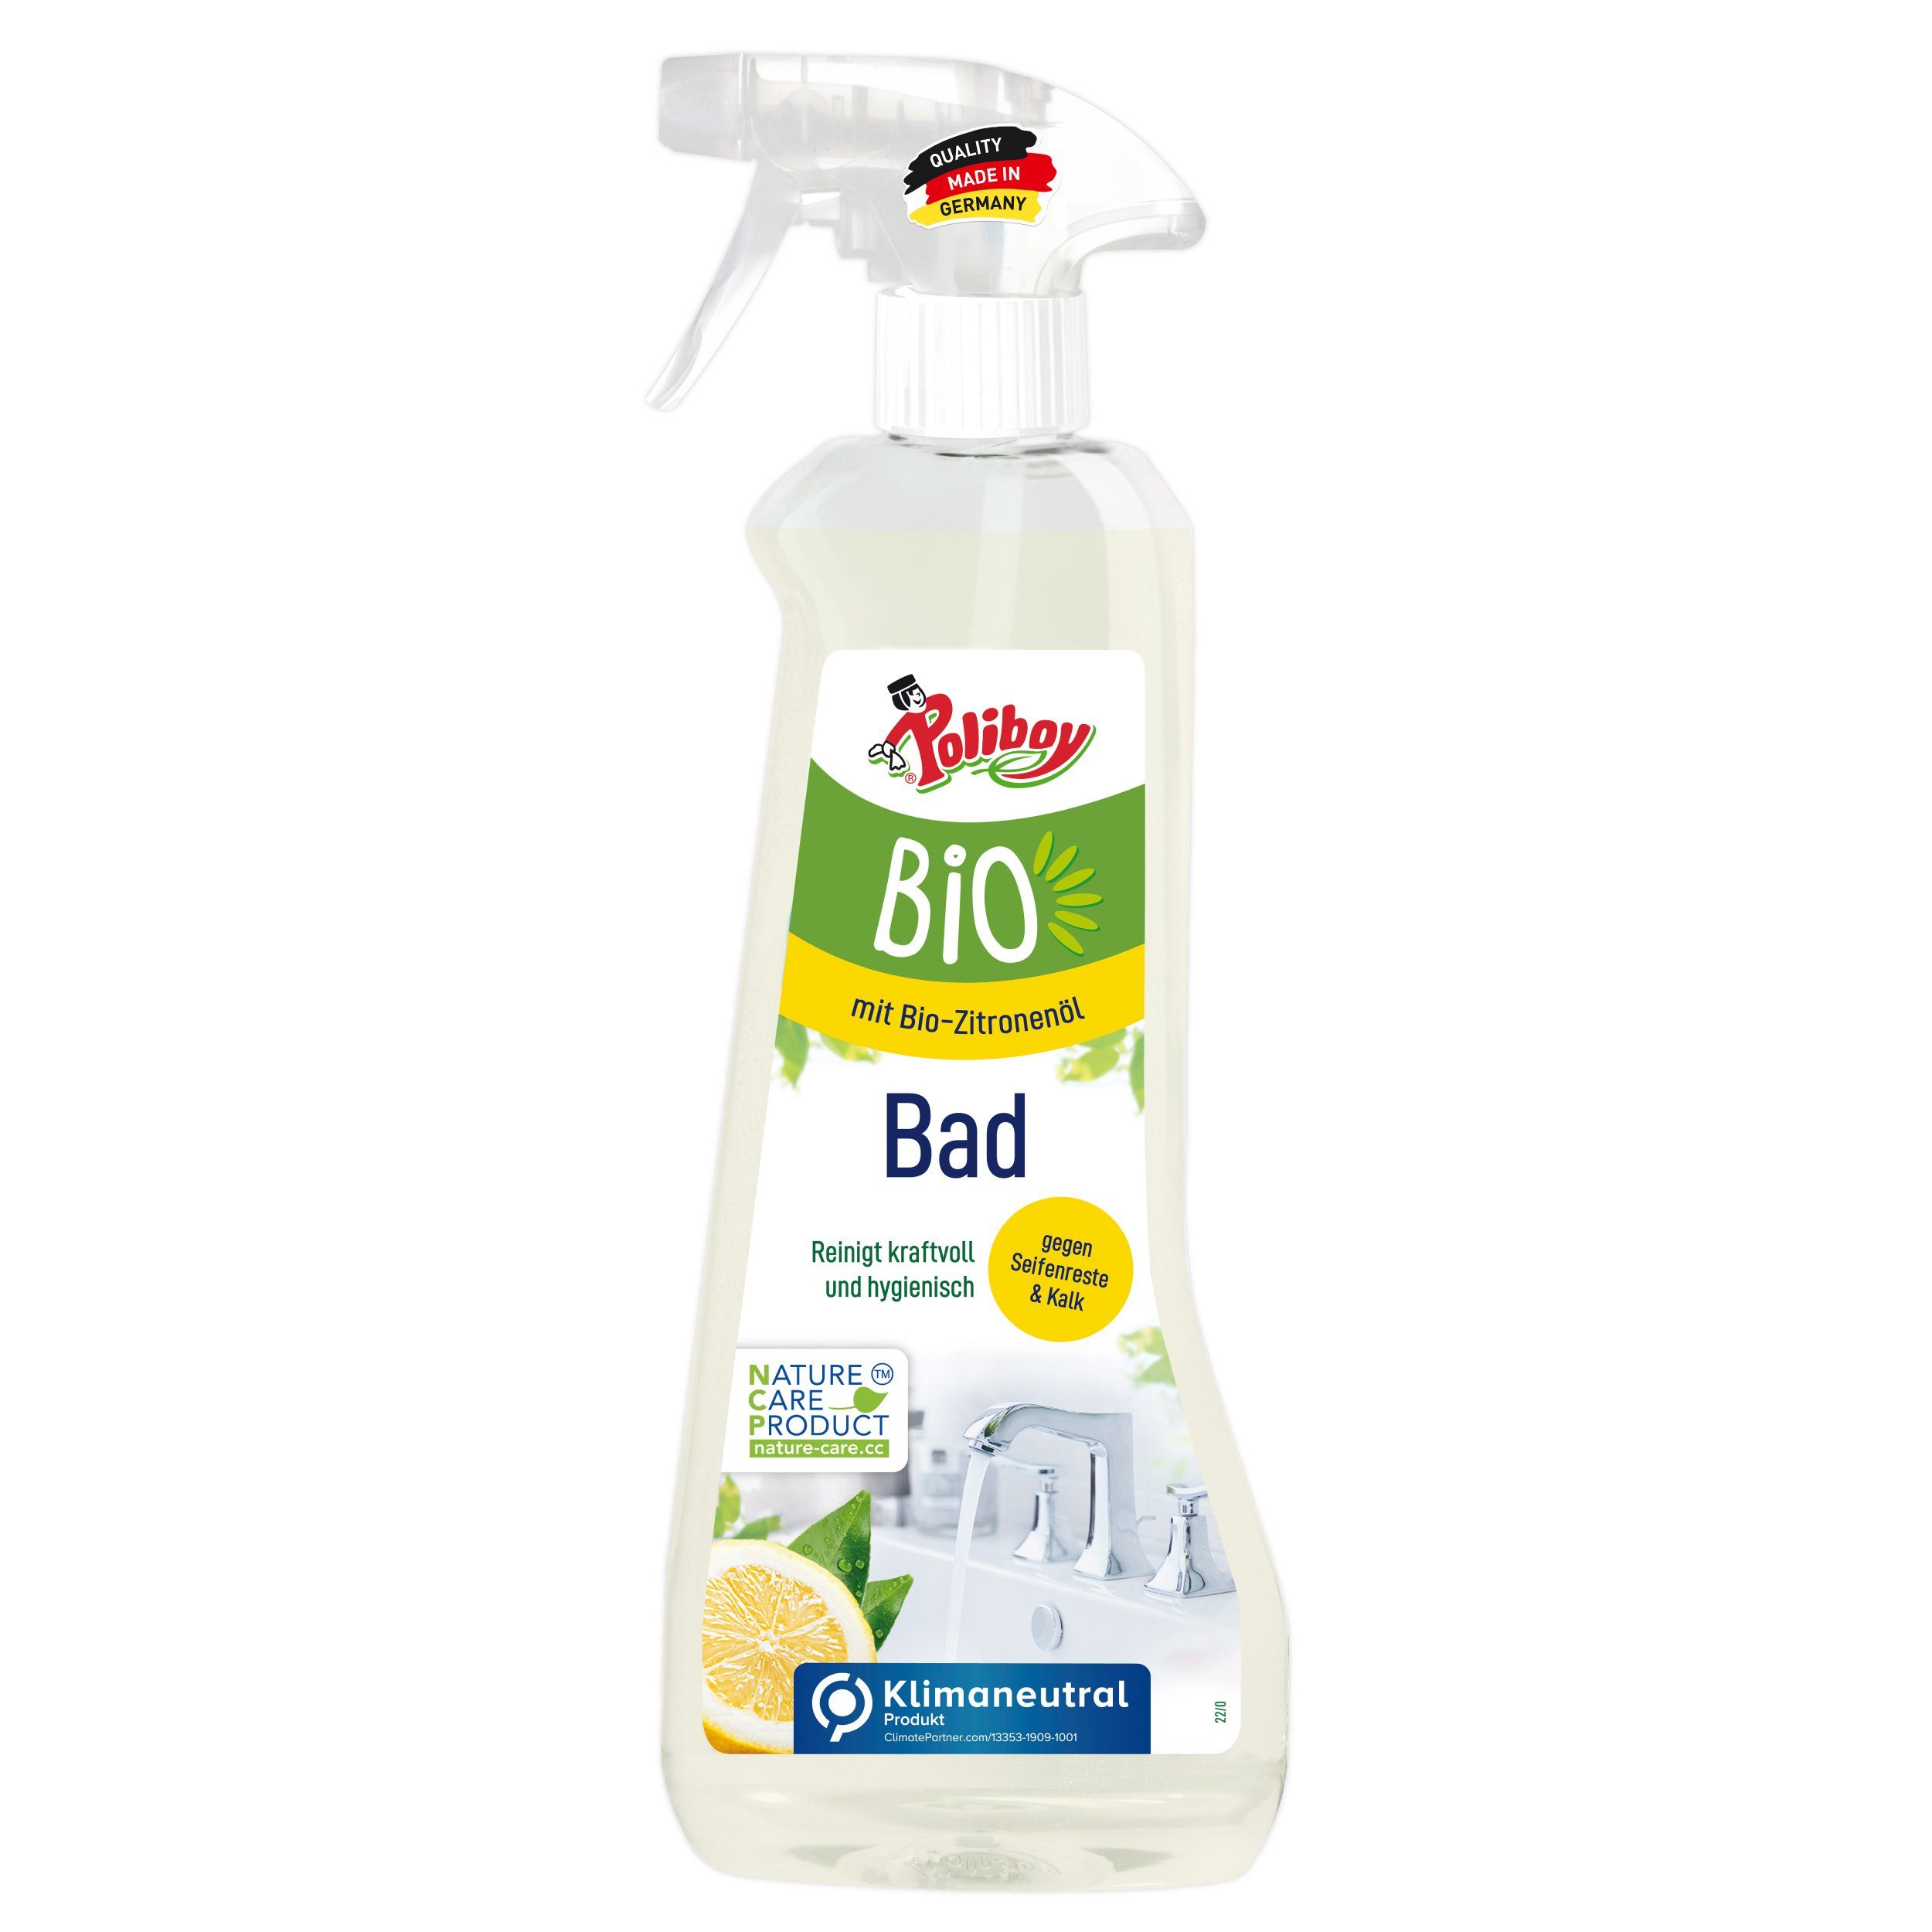 poliboy - 500 ml - Bio Badreiniger (zum einfachen Reinigen des Badezimmers geeignet - Made in Germany)